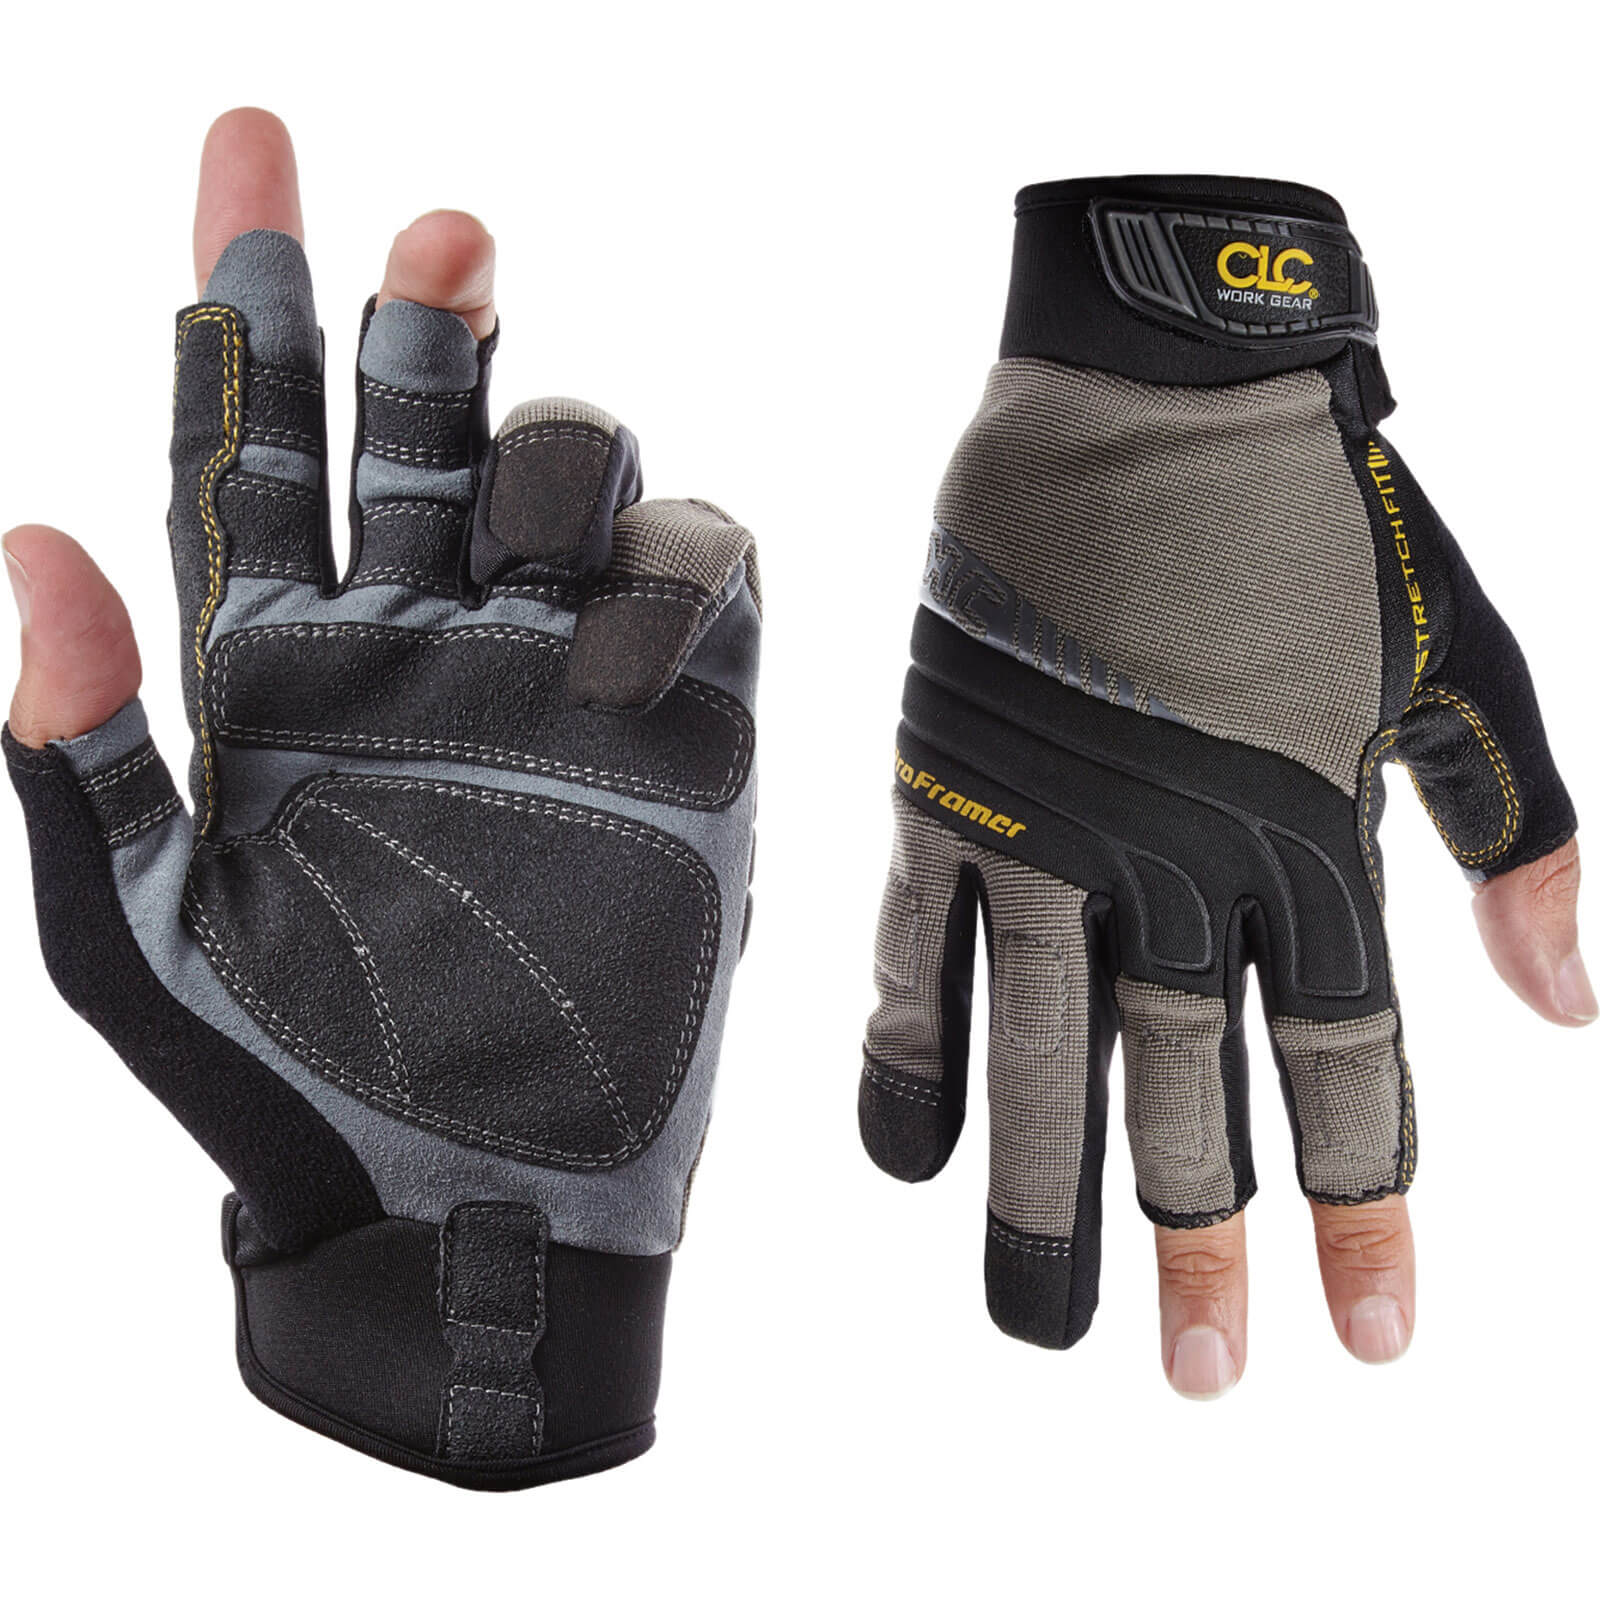 Image of Kunys Flex Grip Pro Framer Gloves L